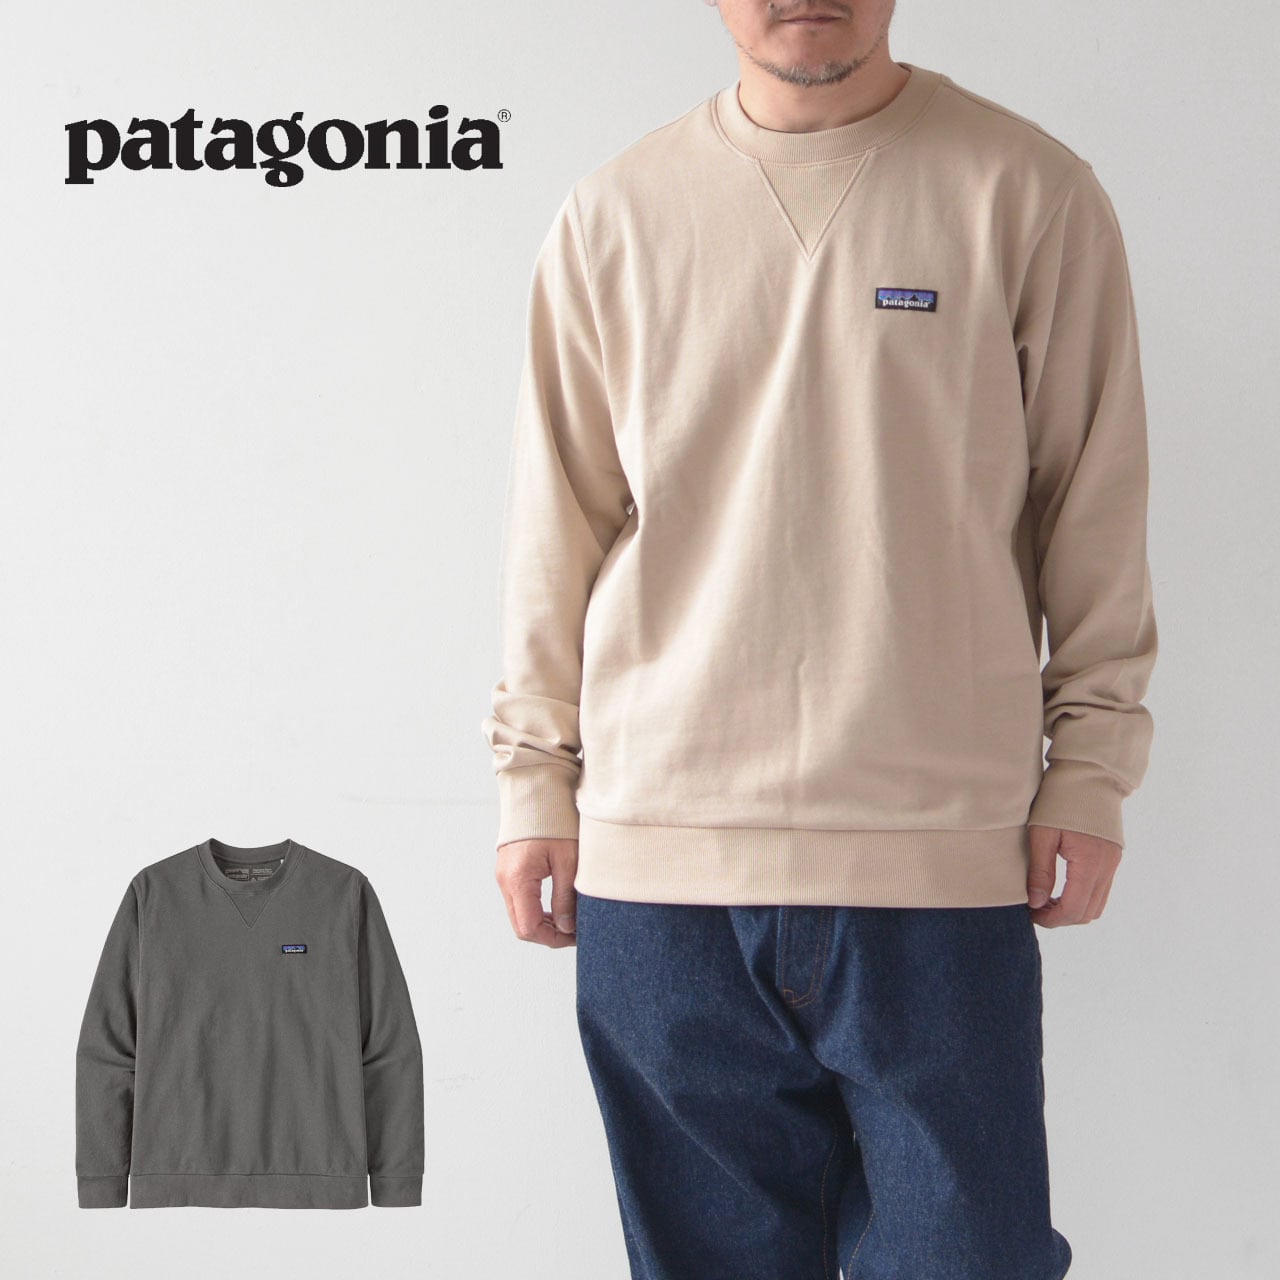 Patagonia [パタゴニア正規代理店]Regenerative Organic Certified Cotton Crewneck  Sweatshirt [26346-23] リジェネラティブ・オーガニック・サーティファイド・コットン・クルーネック・スウェットシャツ・MEN'S  LADY'S [2023SS] refalt online store